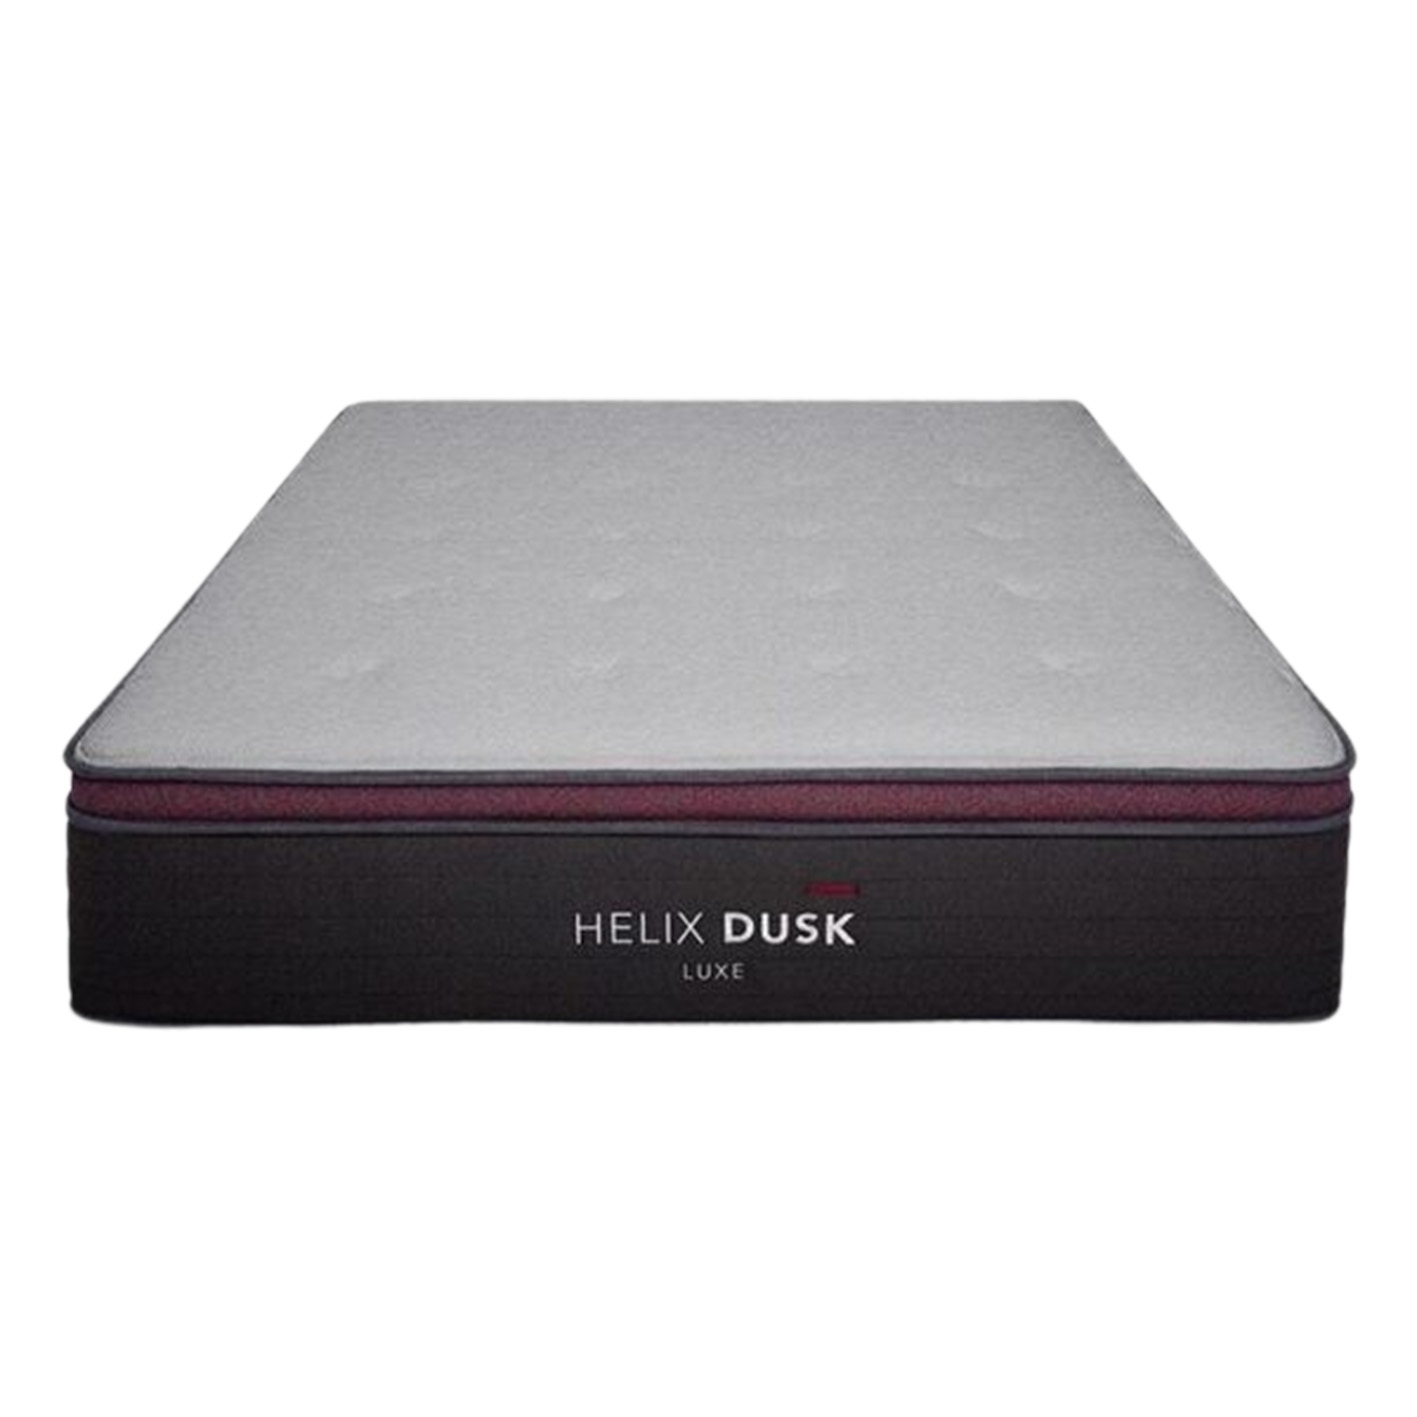 Helix Dusk Luxe Mattress is the best pillow-top mattress for stomach sleepers